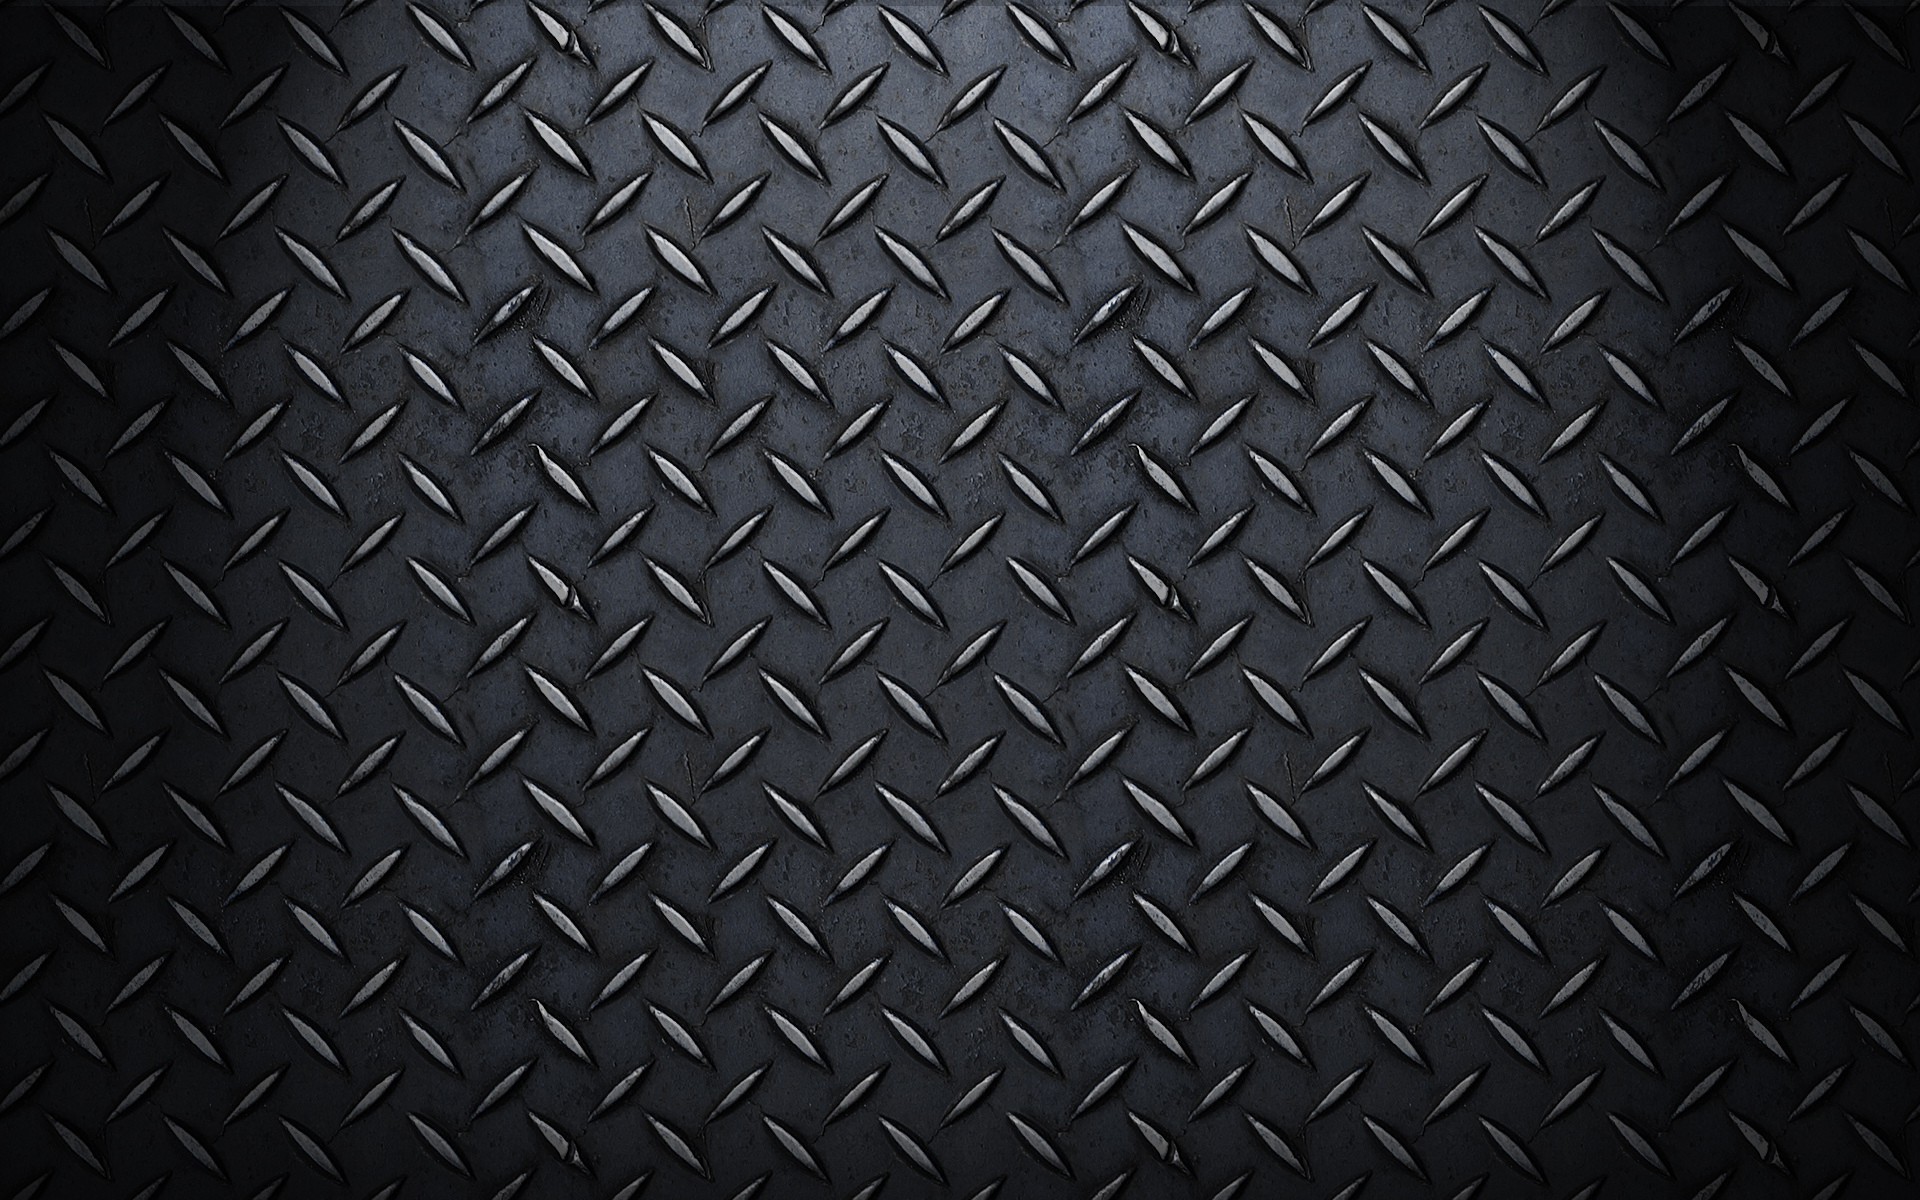 Hd carbon fiber wallpaperl – hd carbon fiber wallpaper HD Wallpapers Pinterest Wallpaper